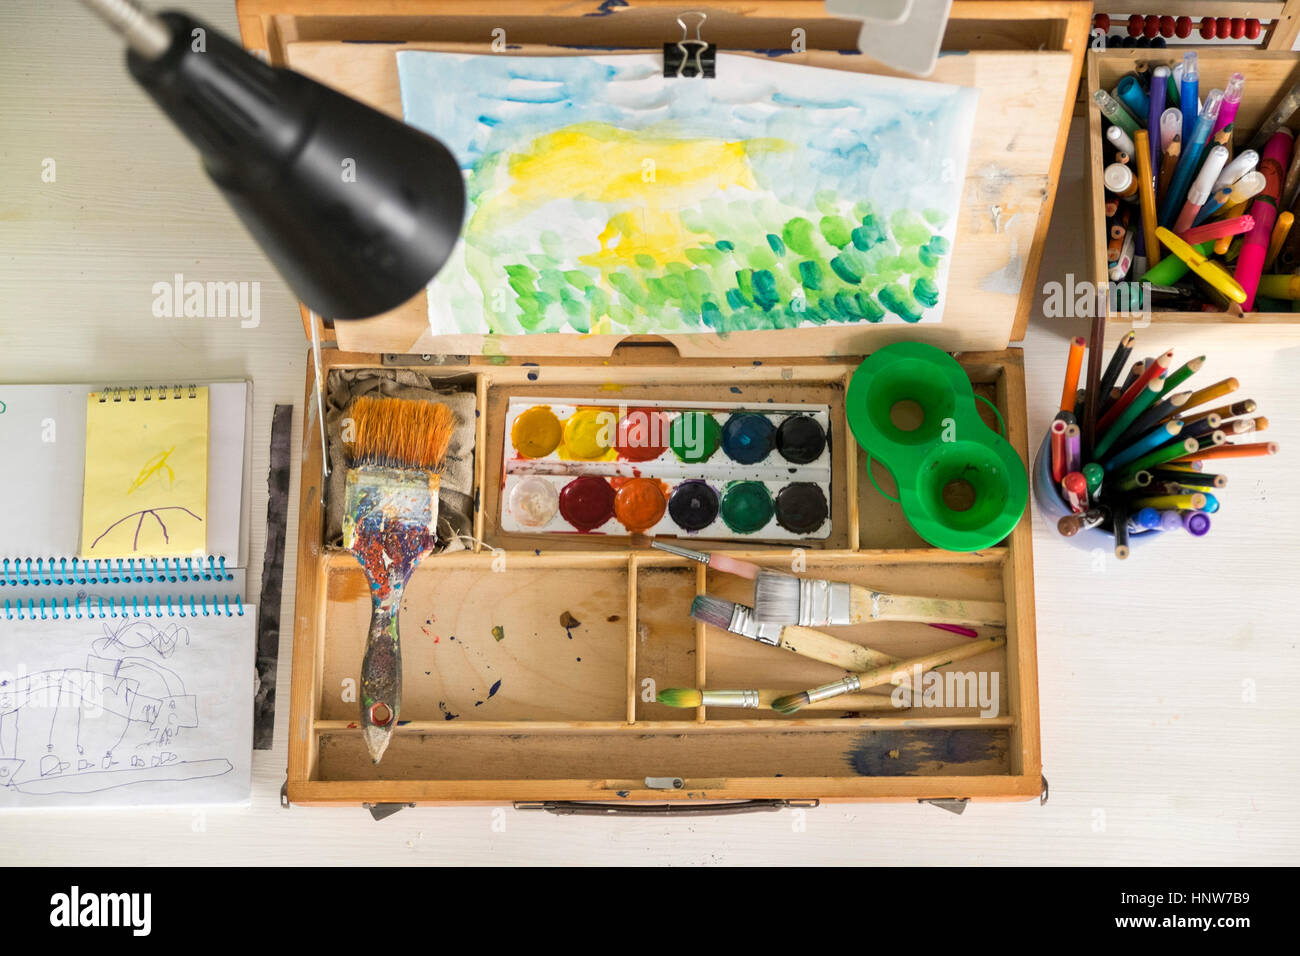 Caja de pintura, pinceles, dibujo y surtido de lápices de colores y herramientas de pintura Foto de stock